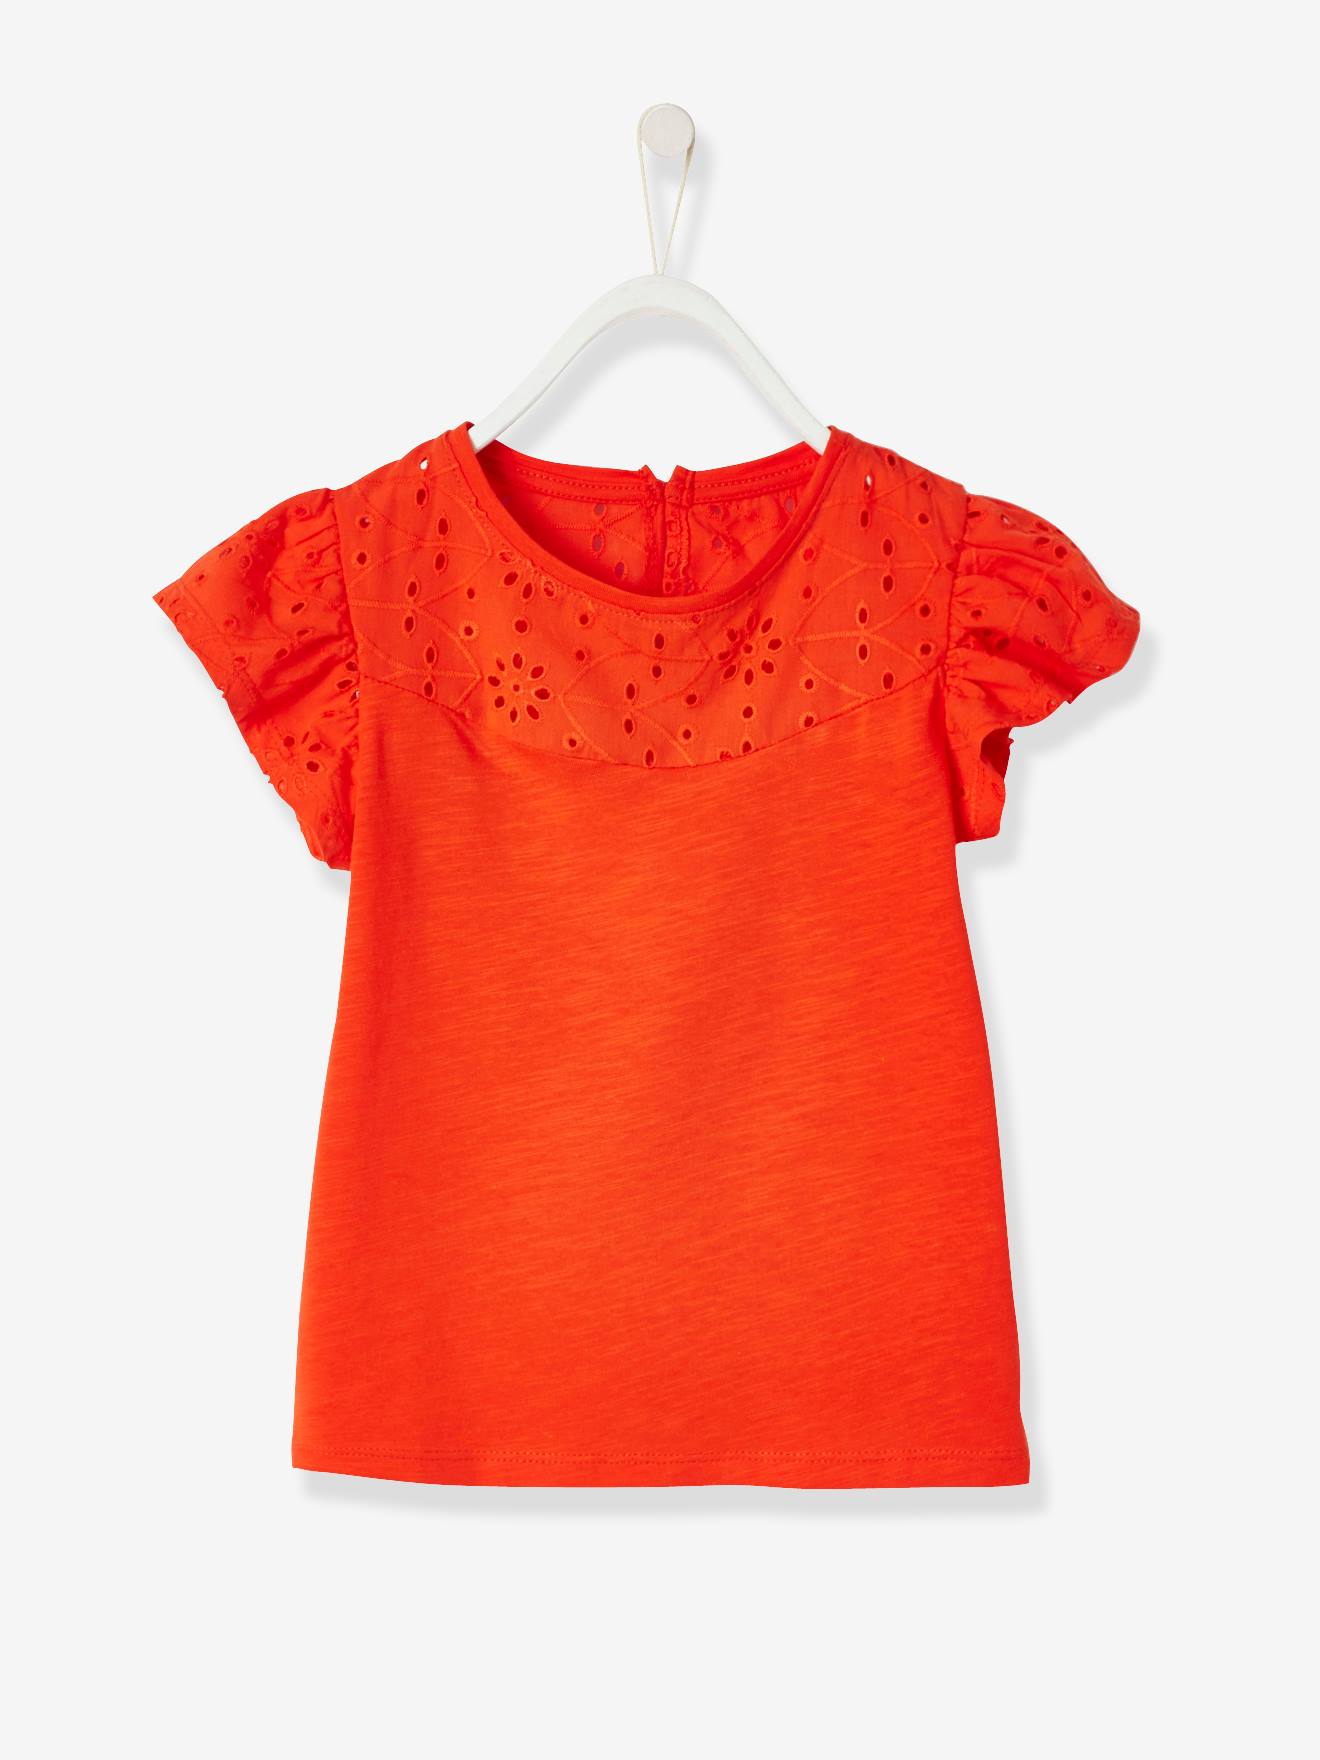 T-shirt fille avec détails broderie anglaise orange